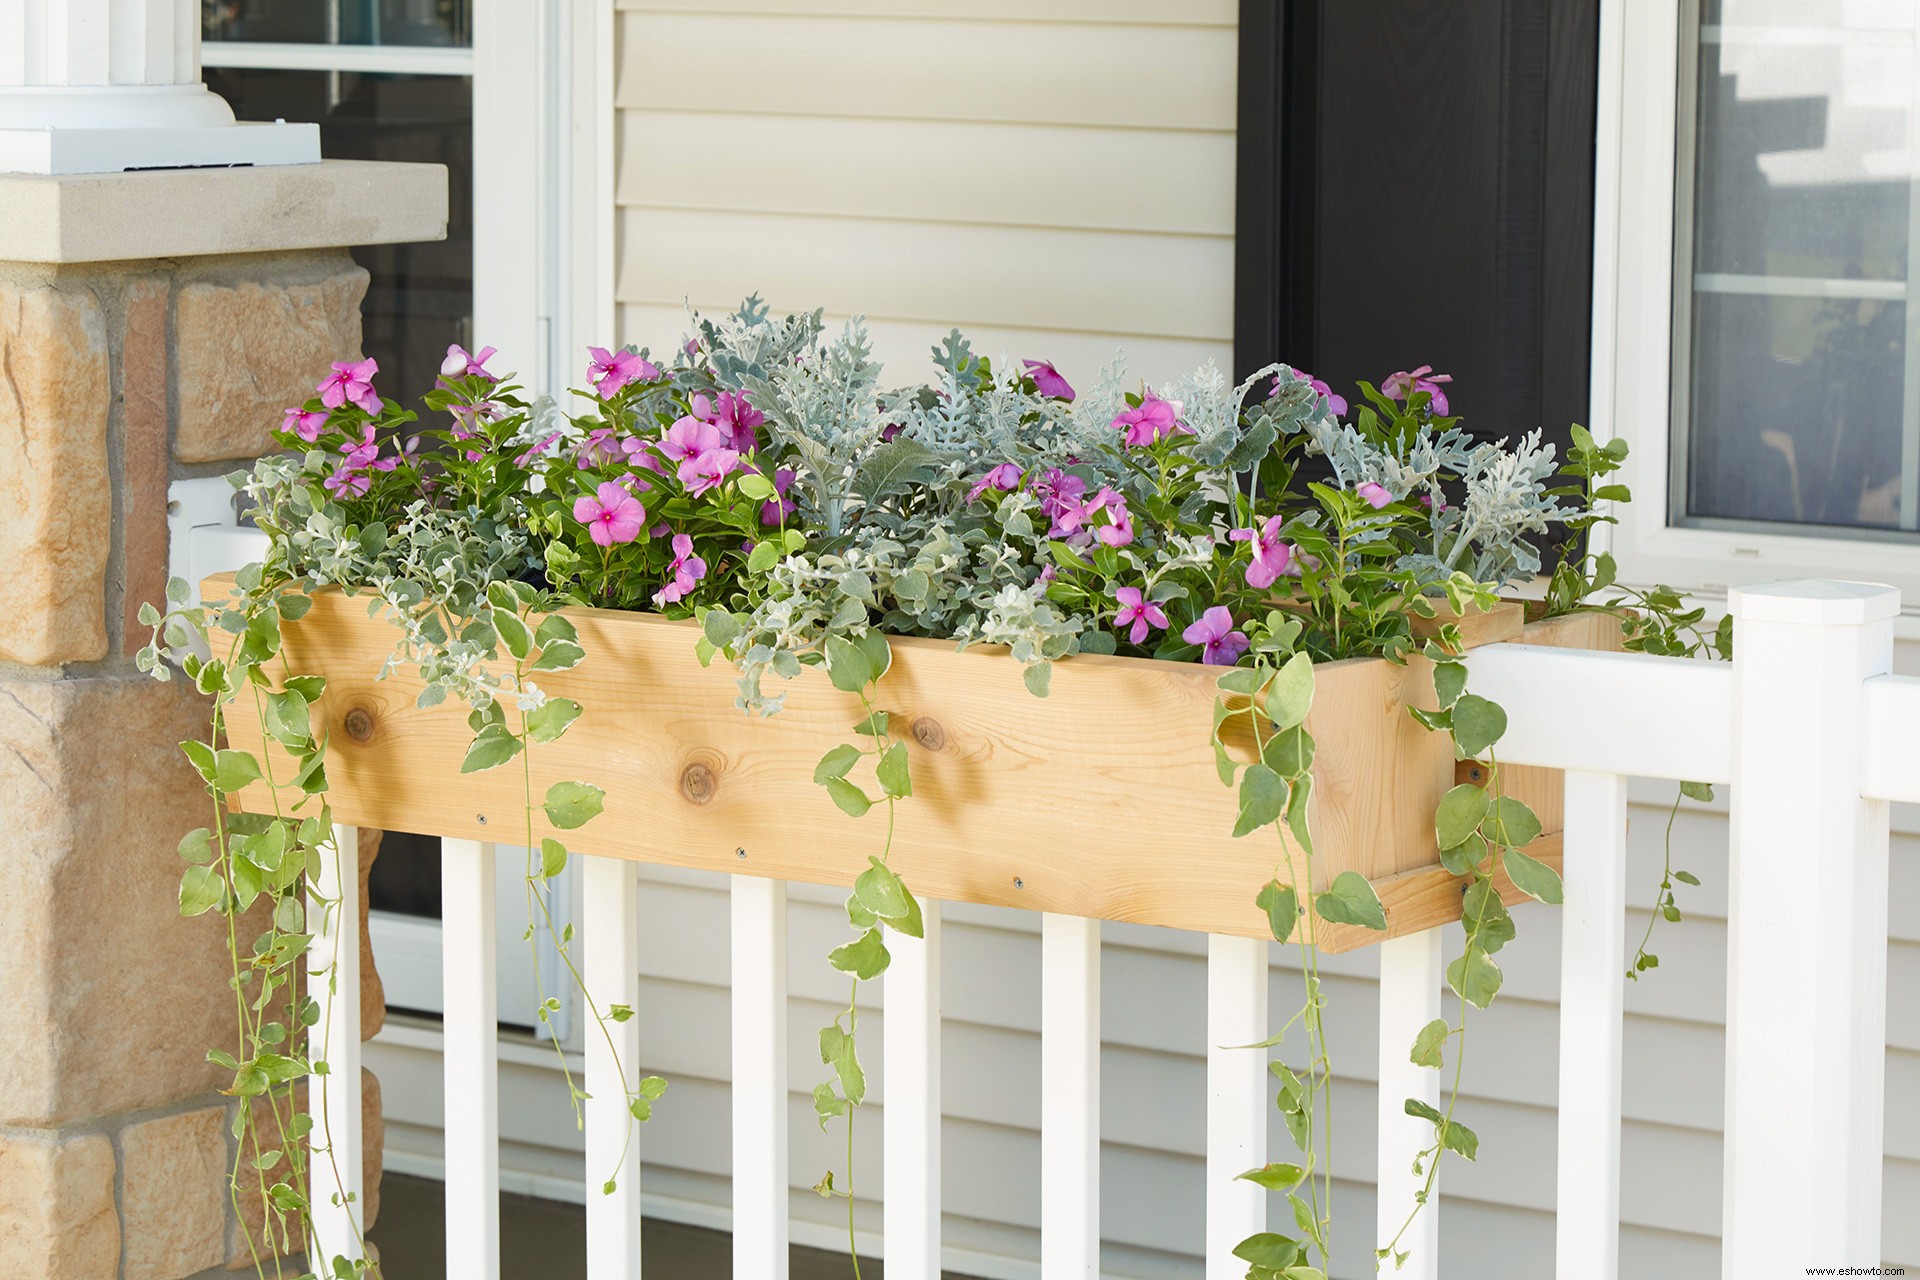 Construya su propia jardinera de barandas para un atractivo exterior personalizado 